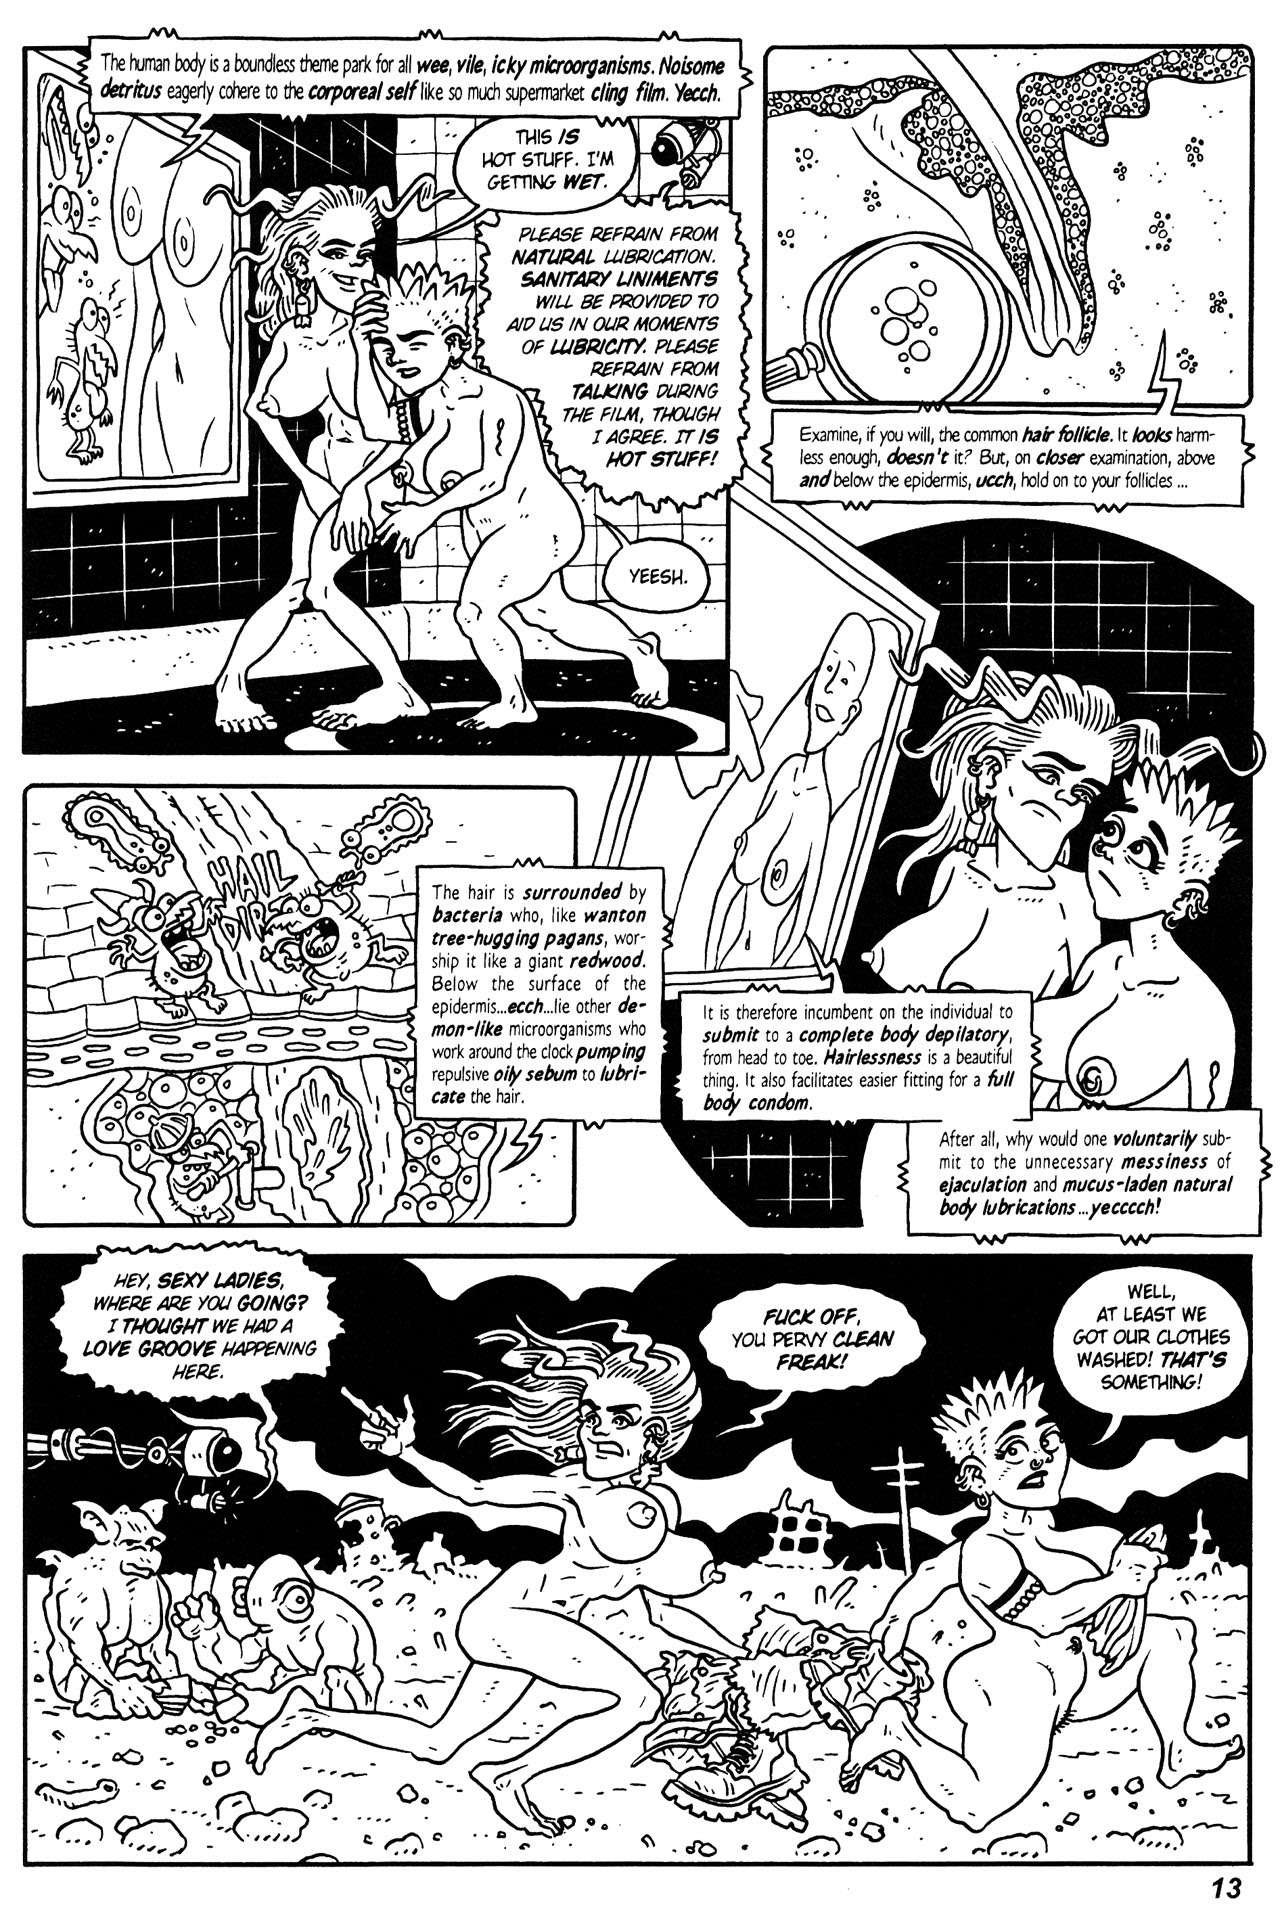 Read online Monkey Jank comic -  Issue # Full - 15